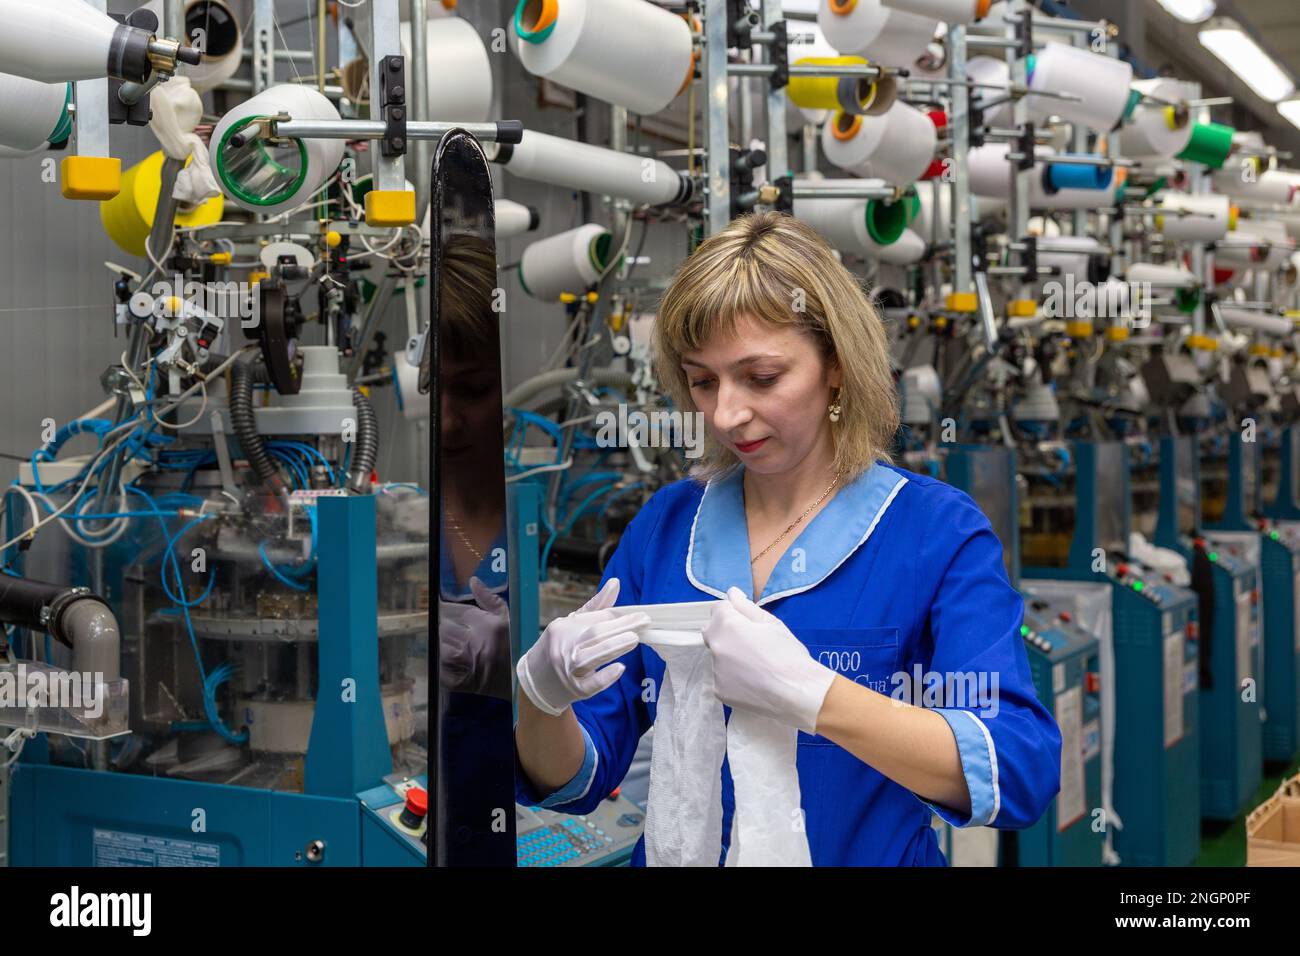 Grodno, Bélarus - 22 novembre 2017: Une employée féminine effectue un contrôle visuel de la qualité de la bonneterie dans JLLC Conte Spa. Même une fabrication de haute précision Banque D'Images